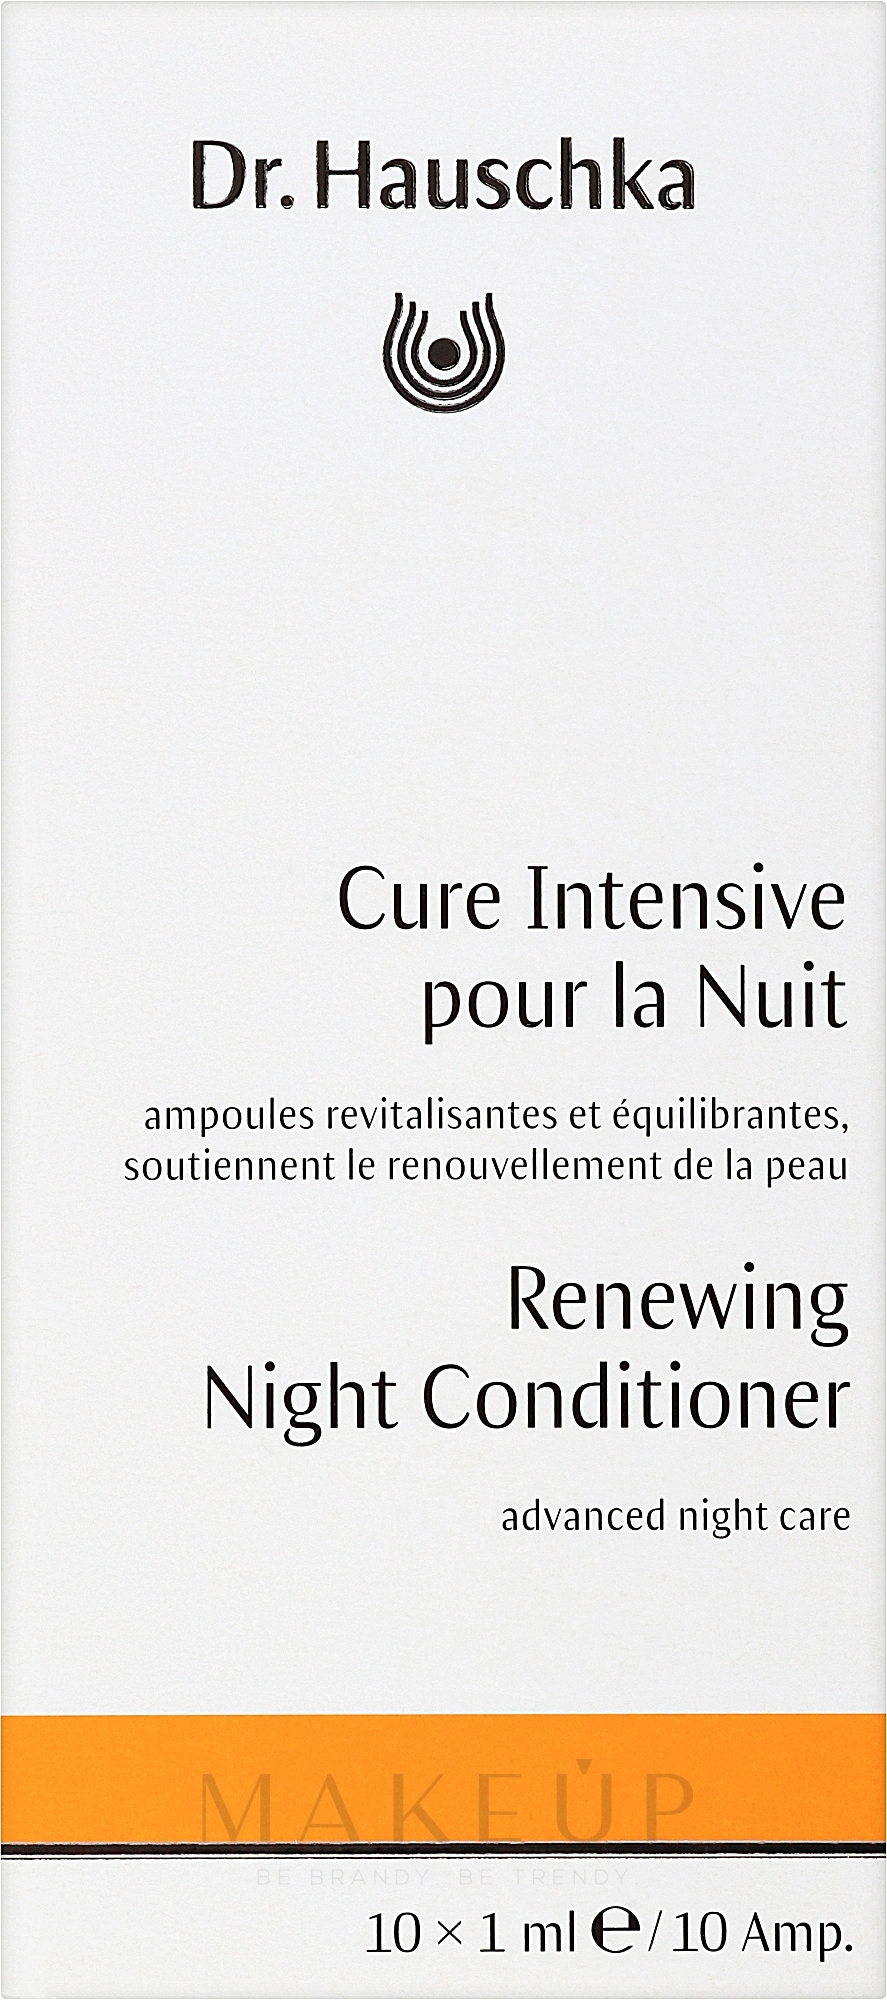 Erneuernder Gesichtsbalsam für die Nacht - Dr. Hauschka Renewing Night Conditioner — Foto 10 x 1 ml